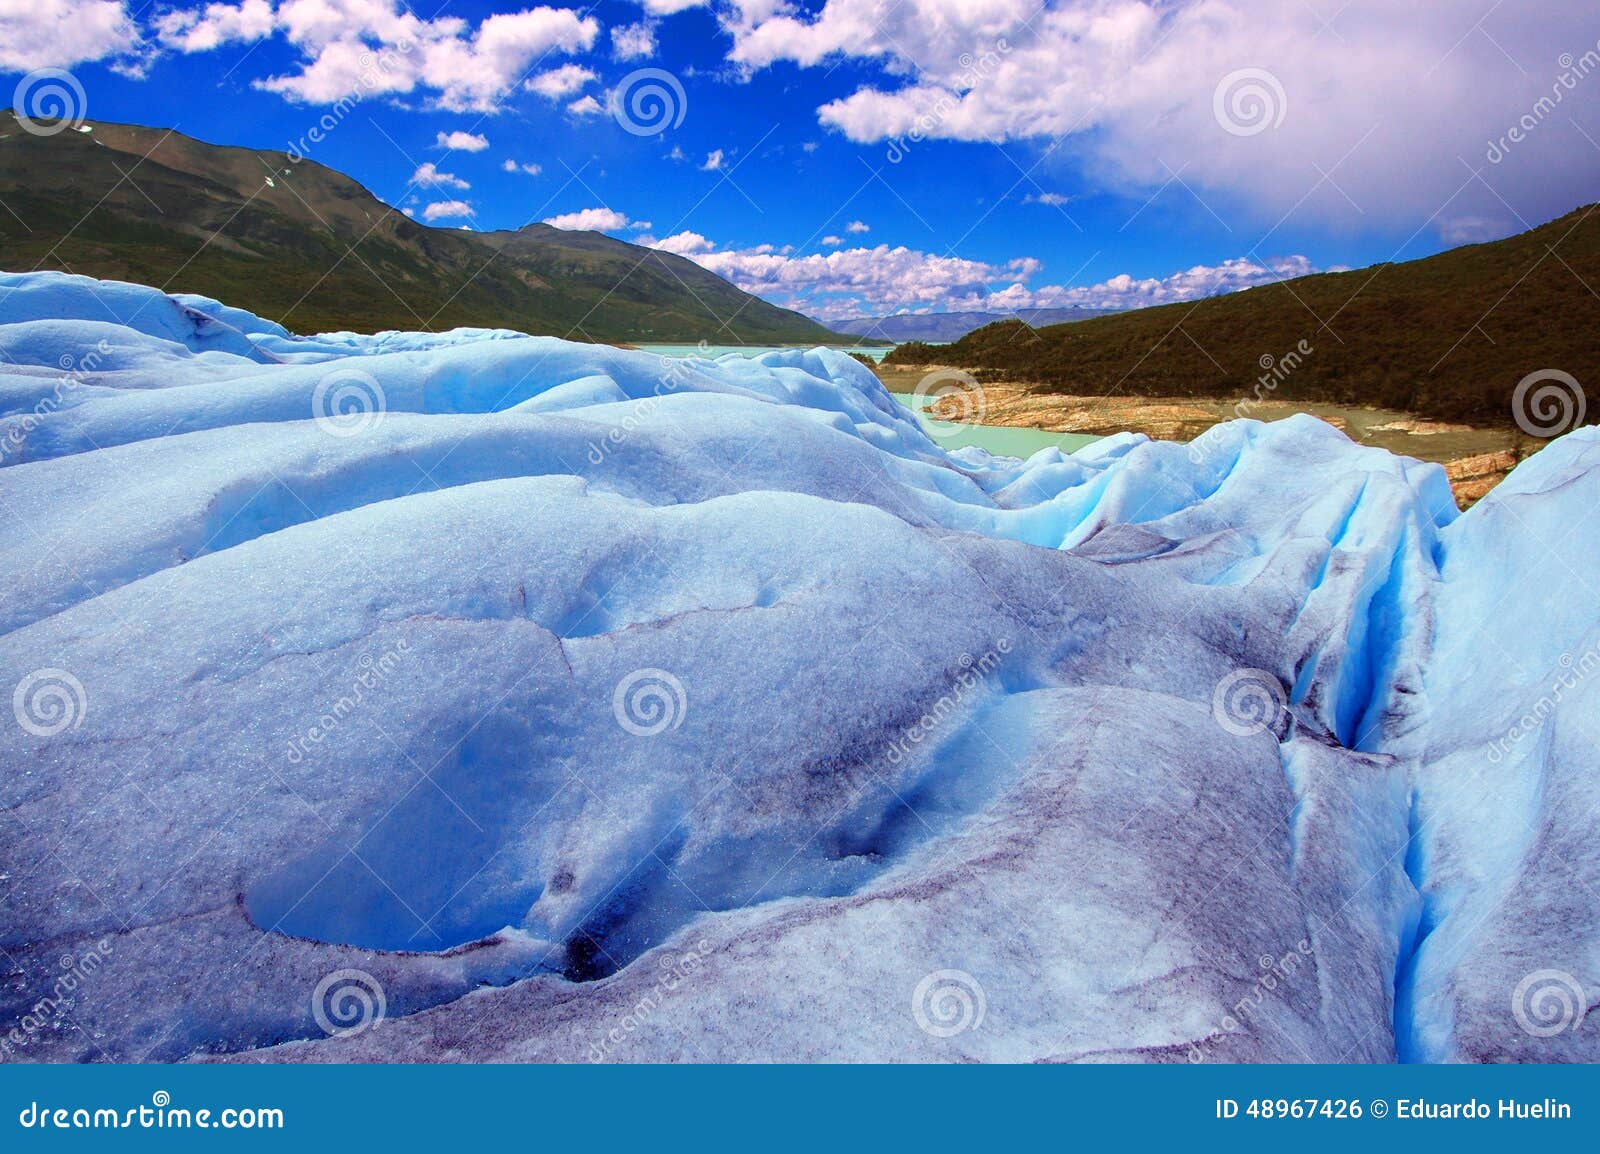 picture captured in perito moreno glacier in patagonia (argentina)